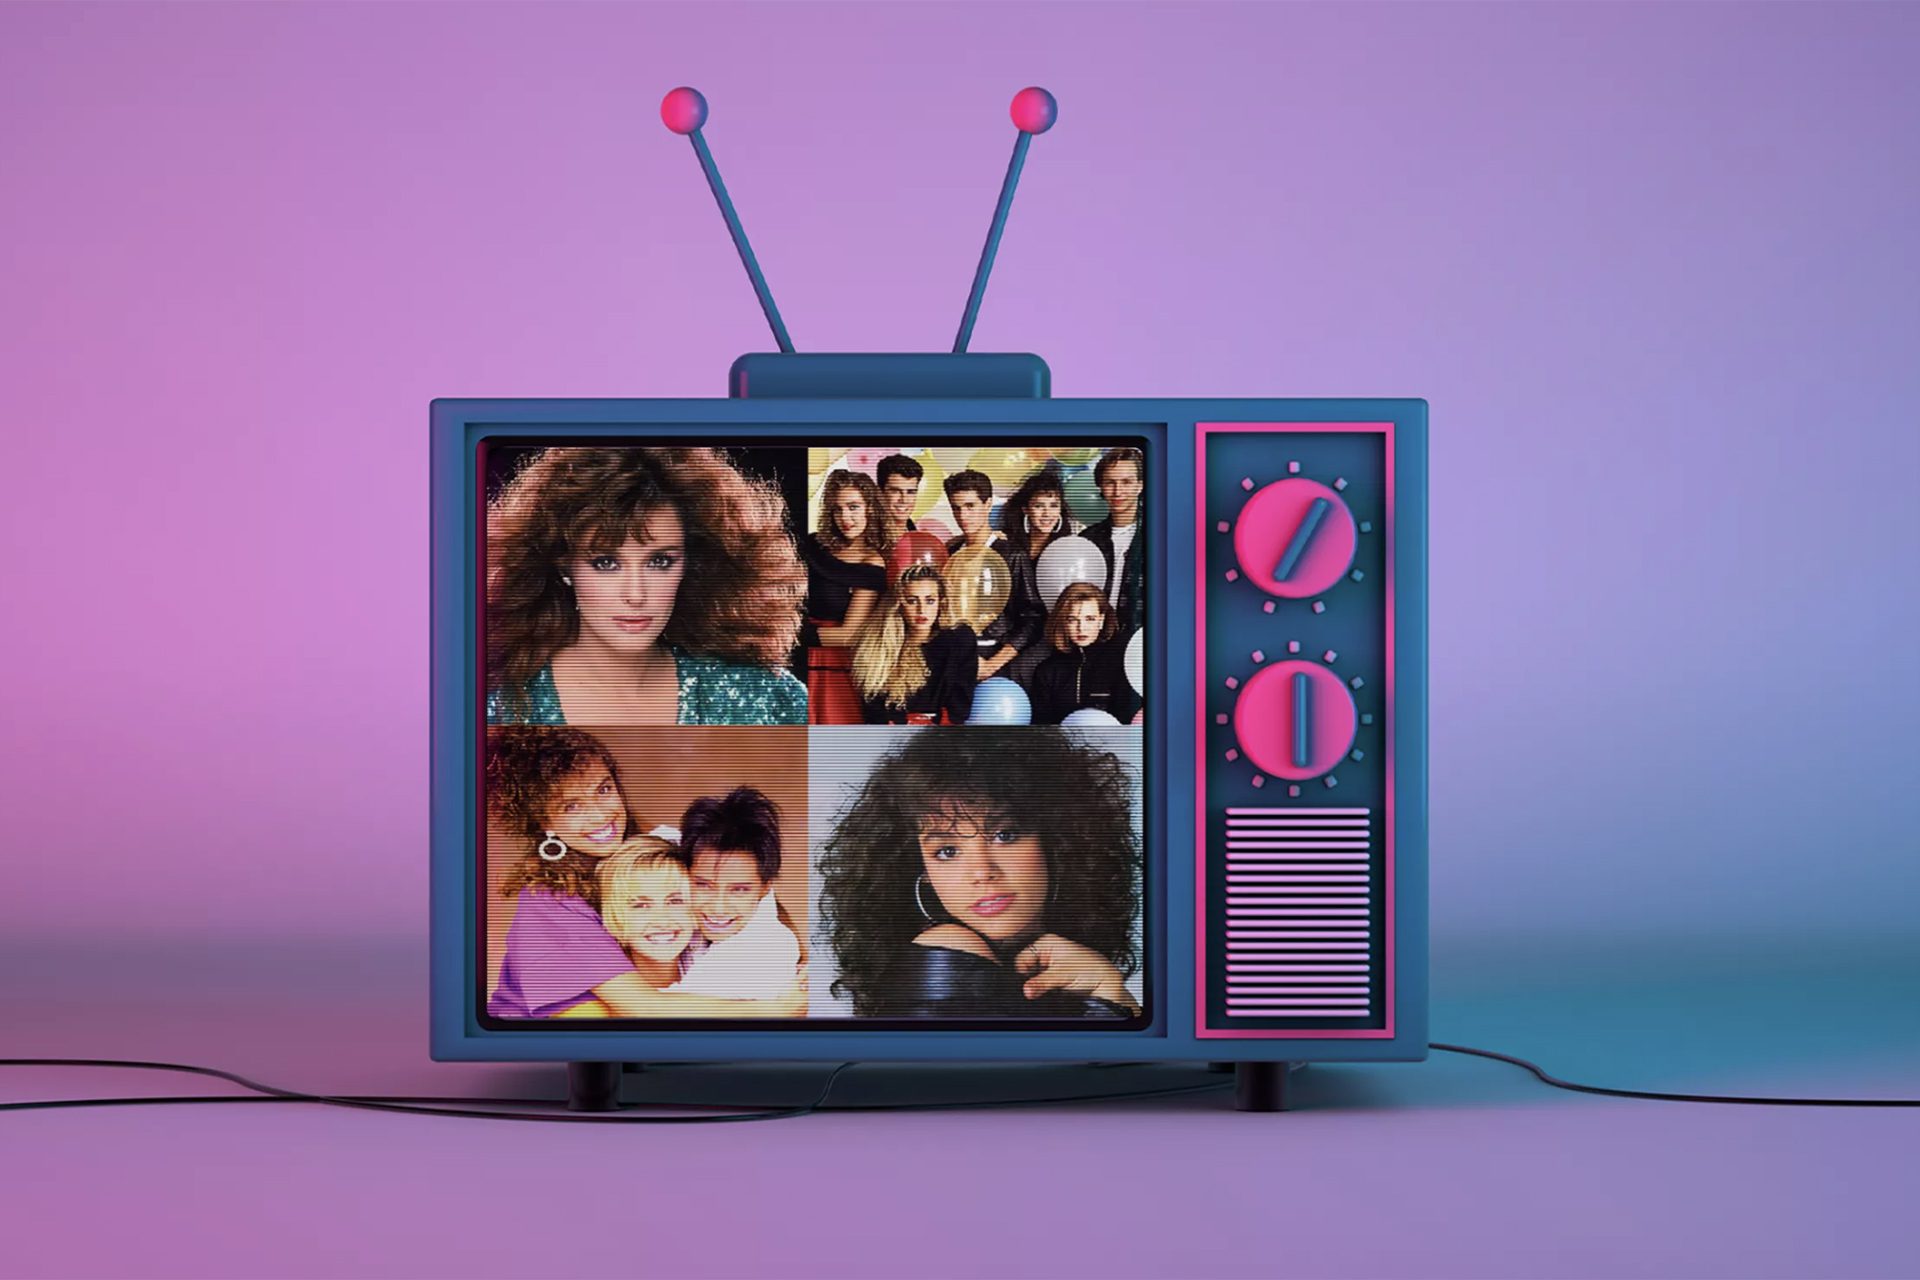 Artistas de los 80's como: Flans, Timbiriche, Lucia Mendez, Locomia en una tv azul con fondo rosa y azul fluorescente